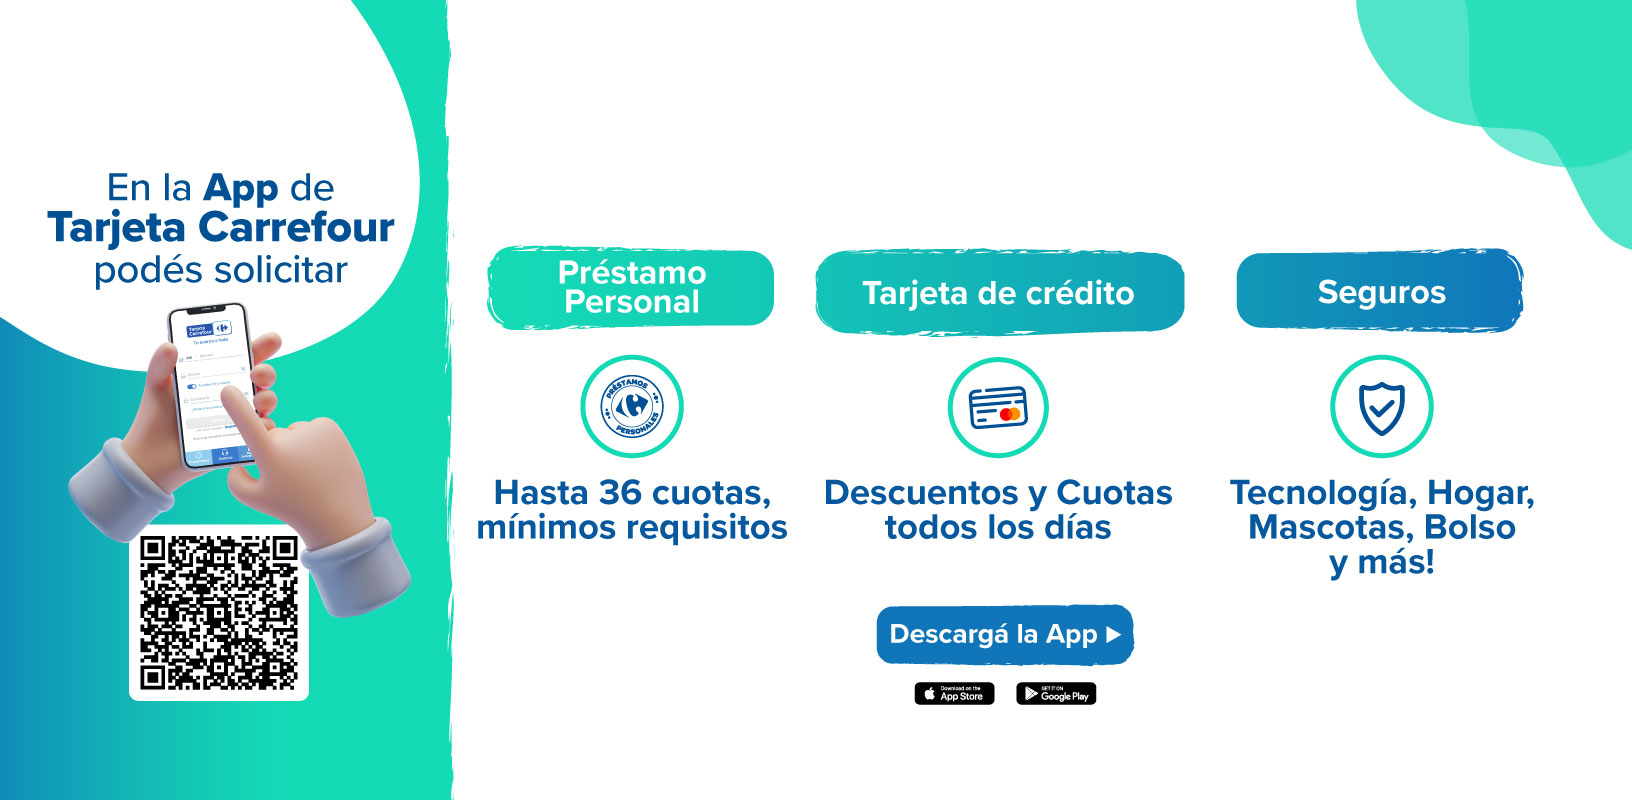 En la App de Tarjeta Carrefour, podés solicitar un préstamo personal, tarjeta de crédito, seguros y asistencias